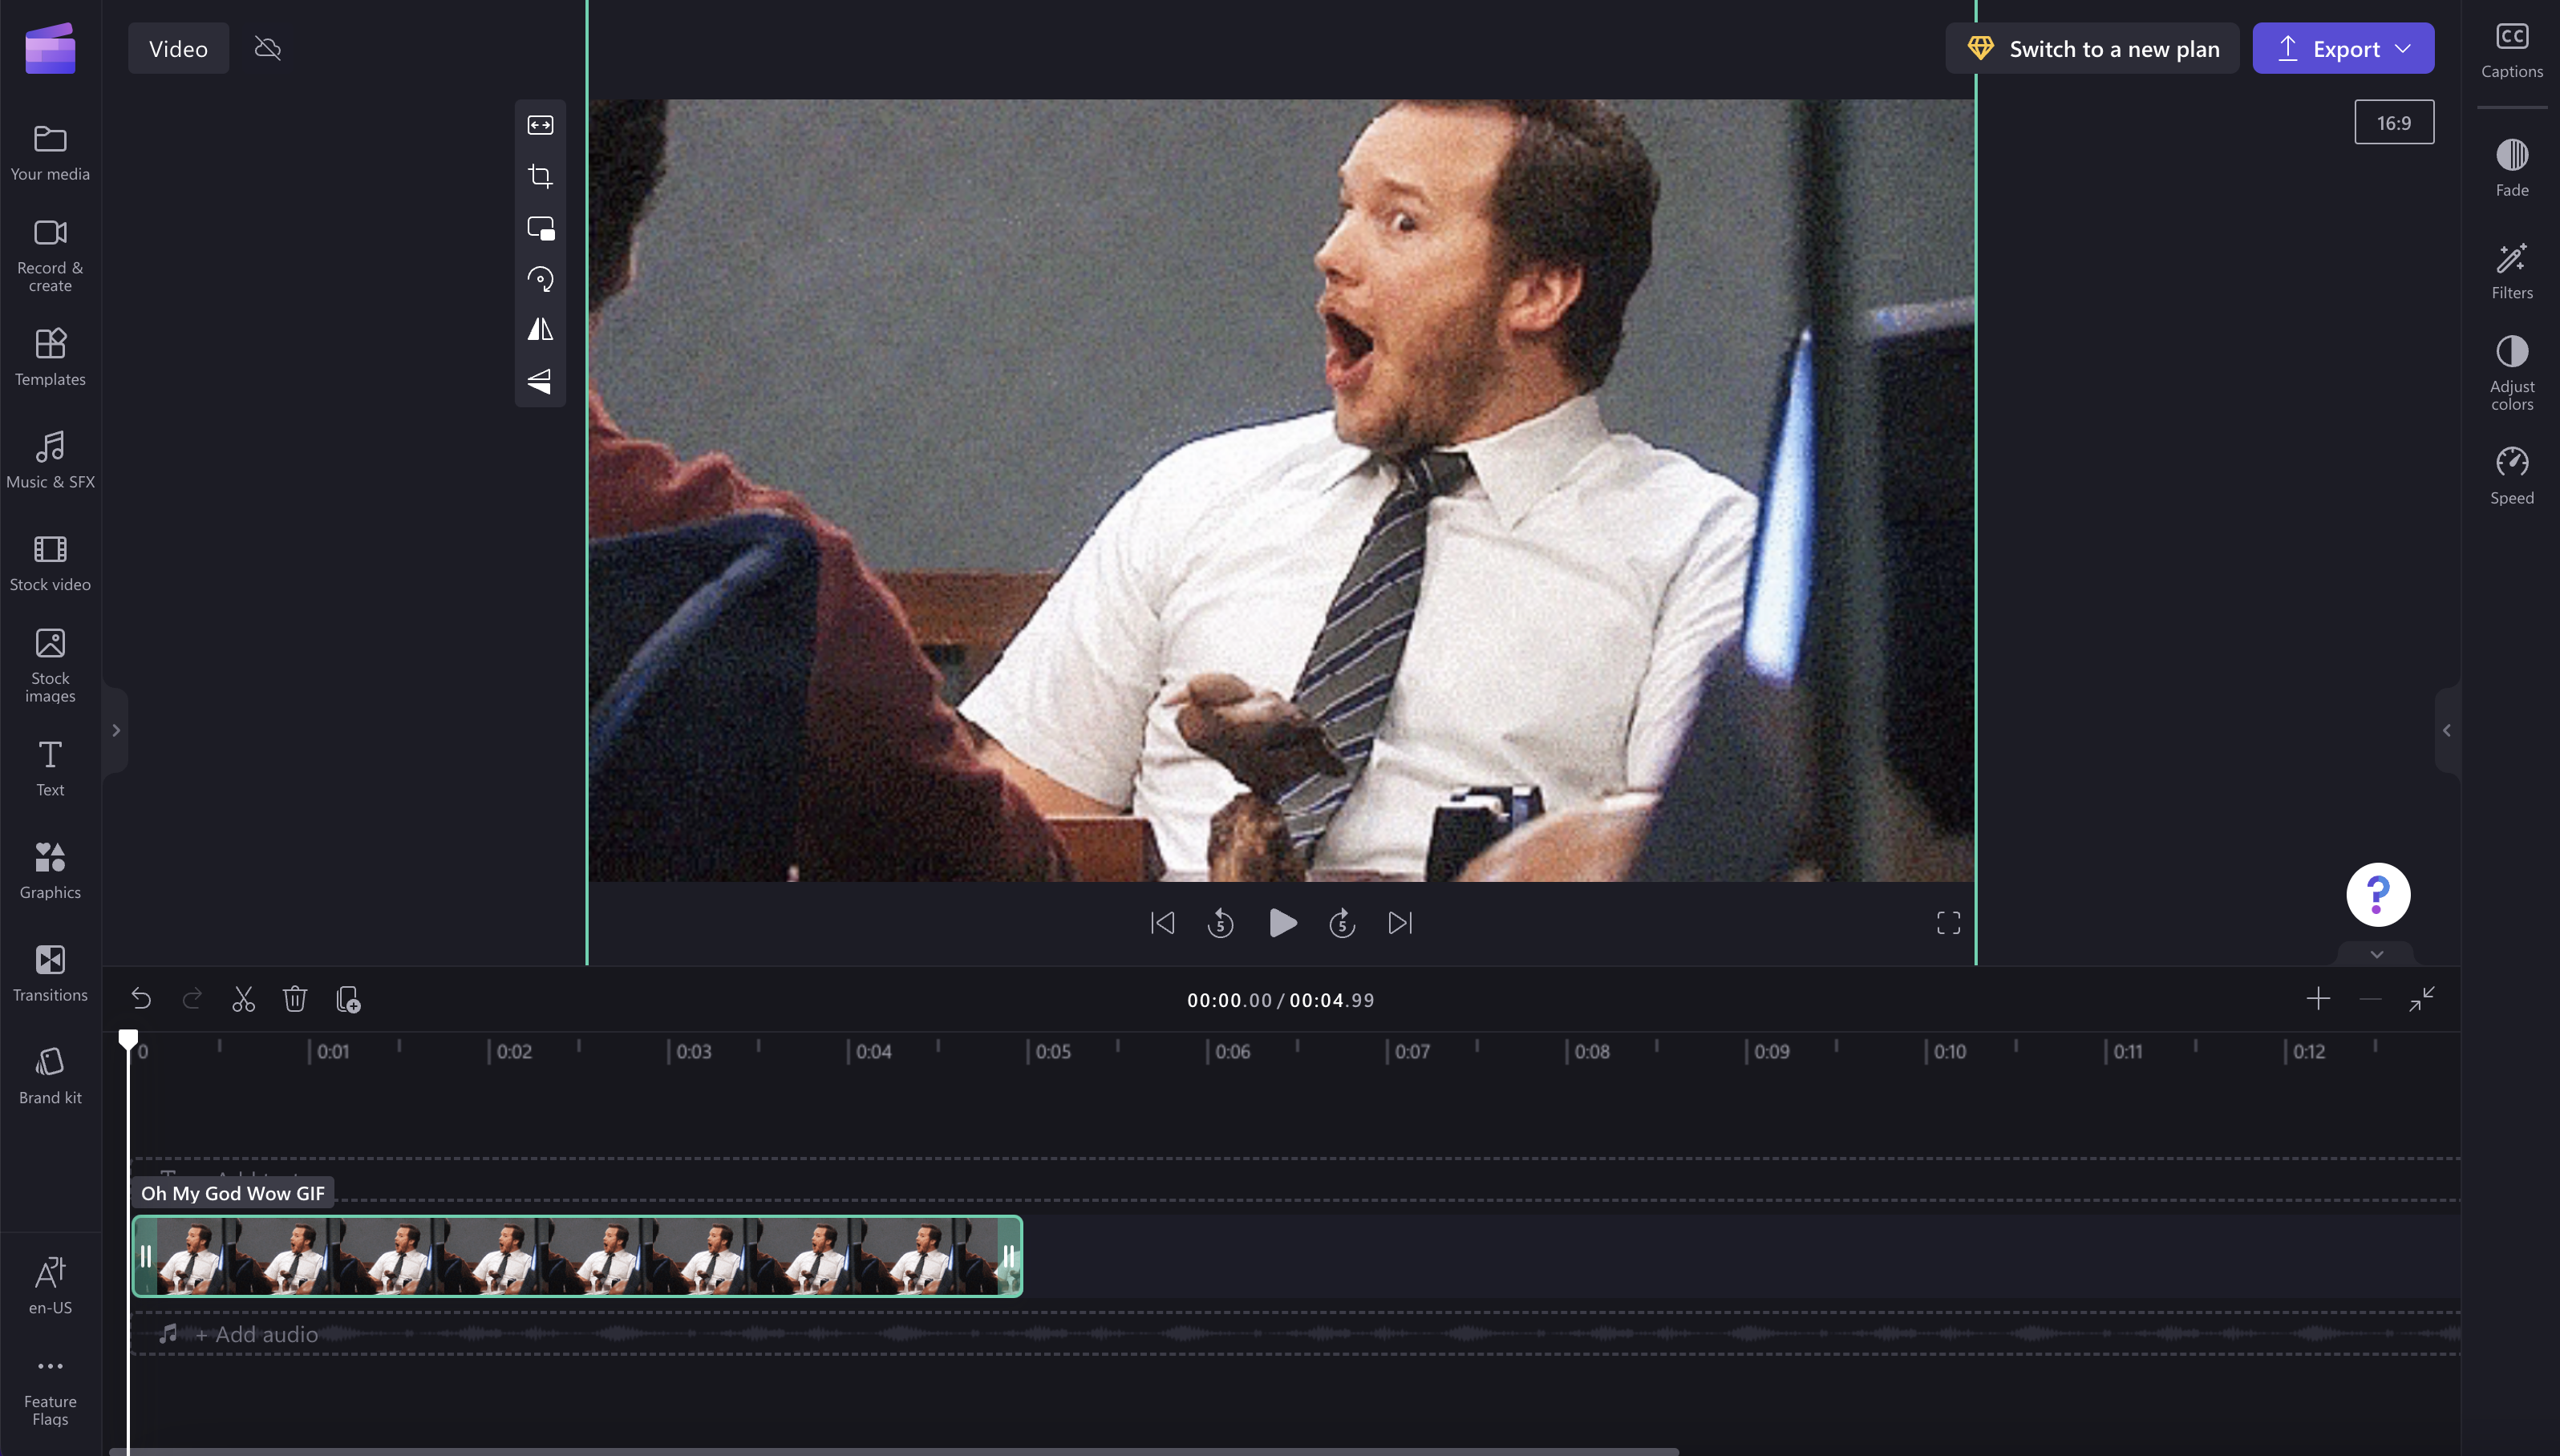 Slika GIF-a, ki ustreza razmerju višina/širina videoposnetka.